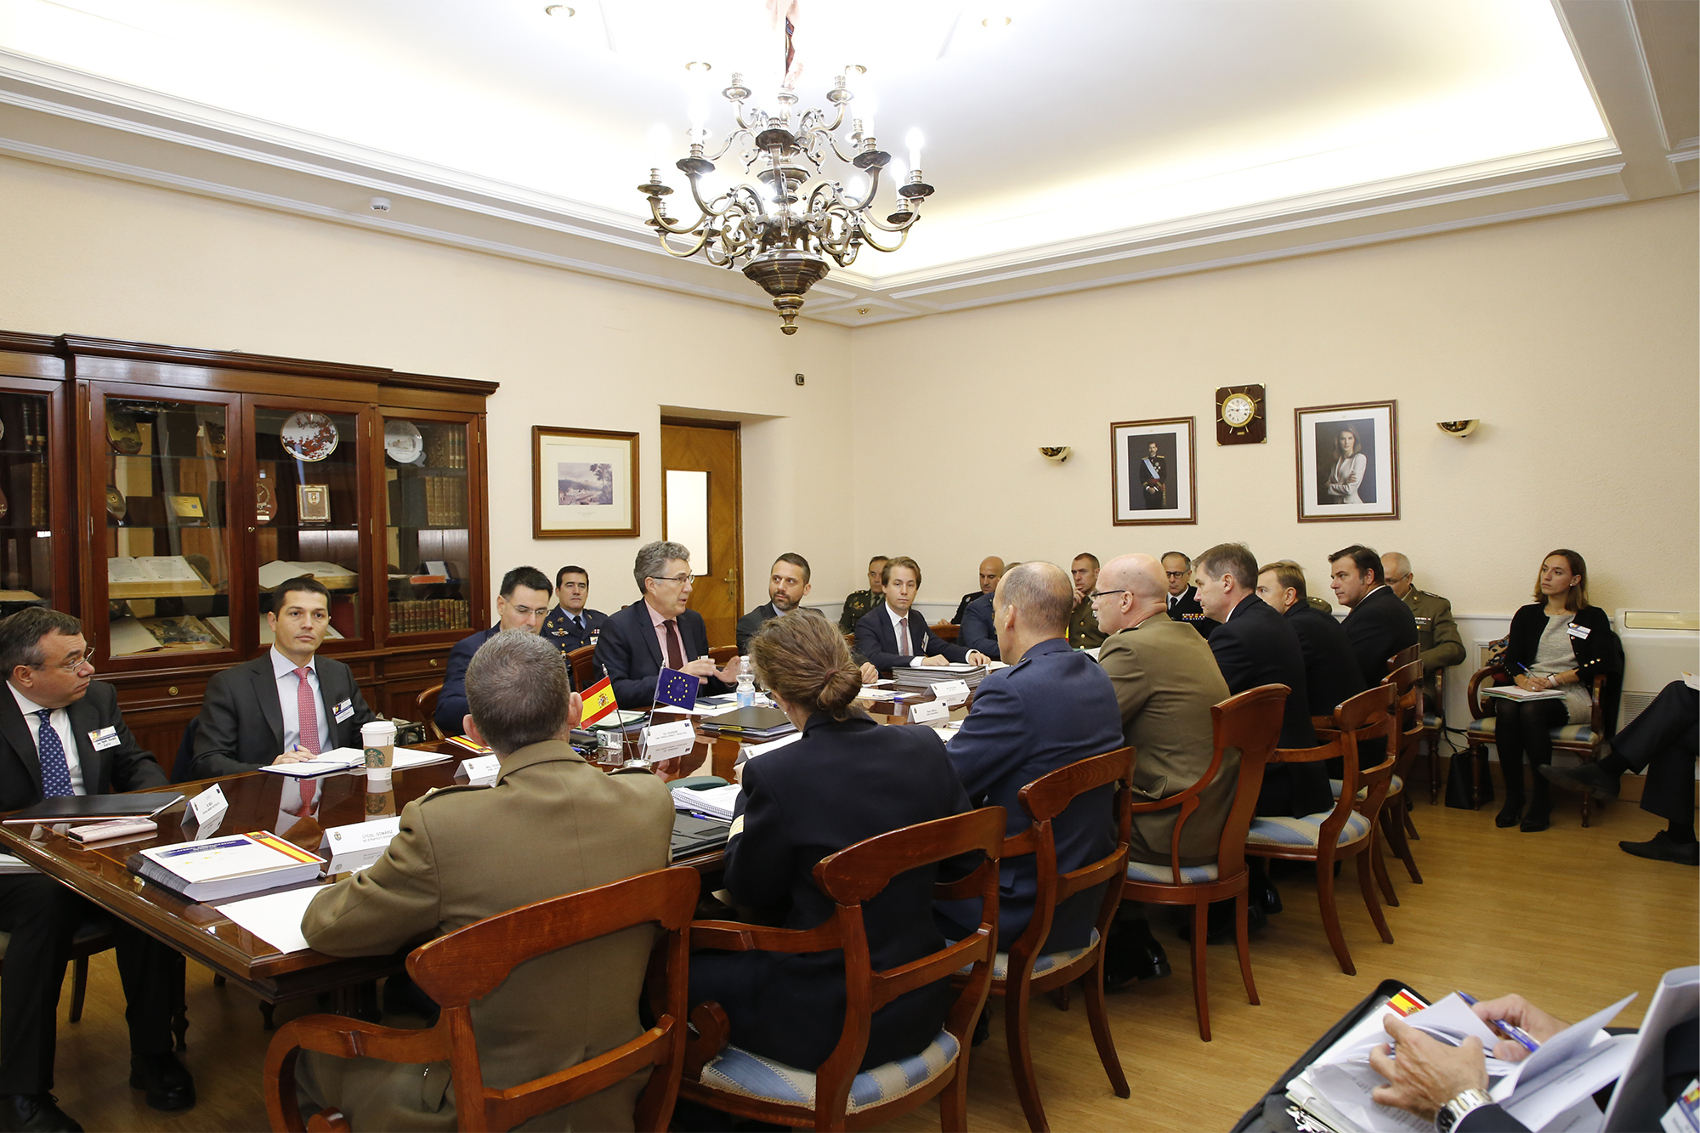 El Estado Mayor Conjunto organiza una reunión bilateral con representantes de la Unión Europea